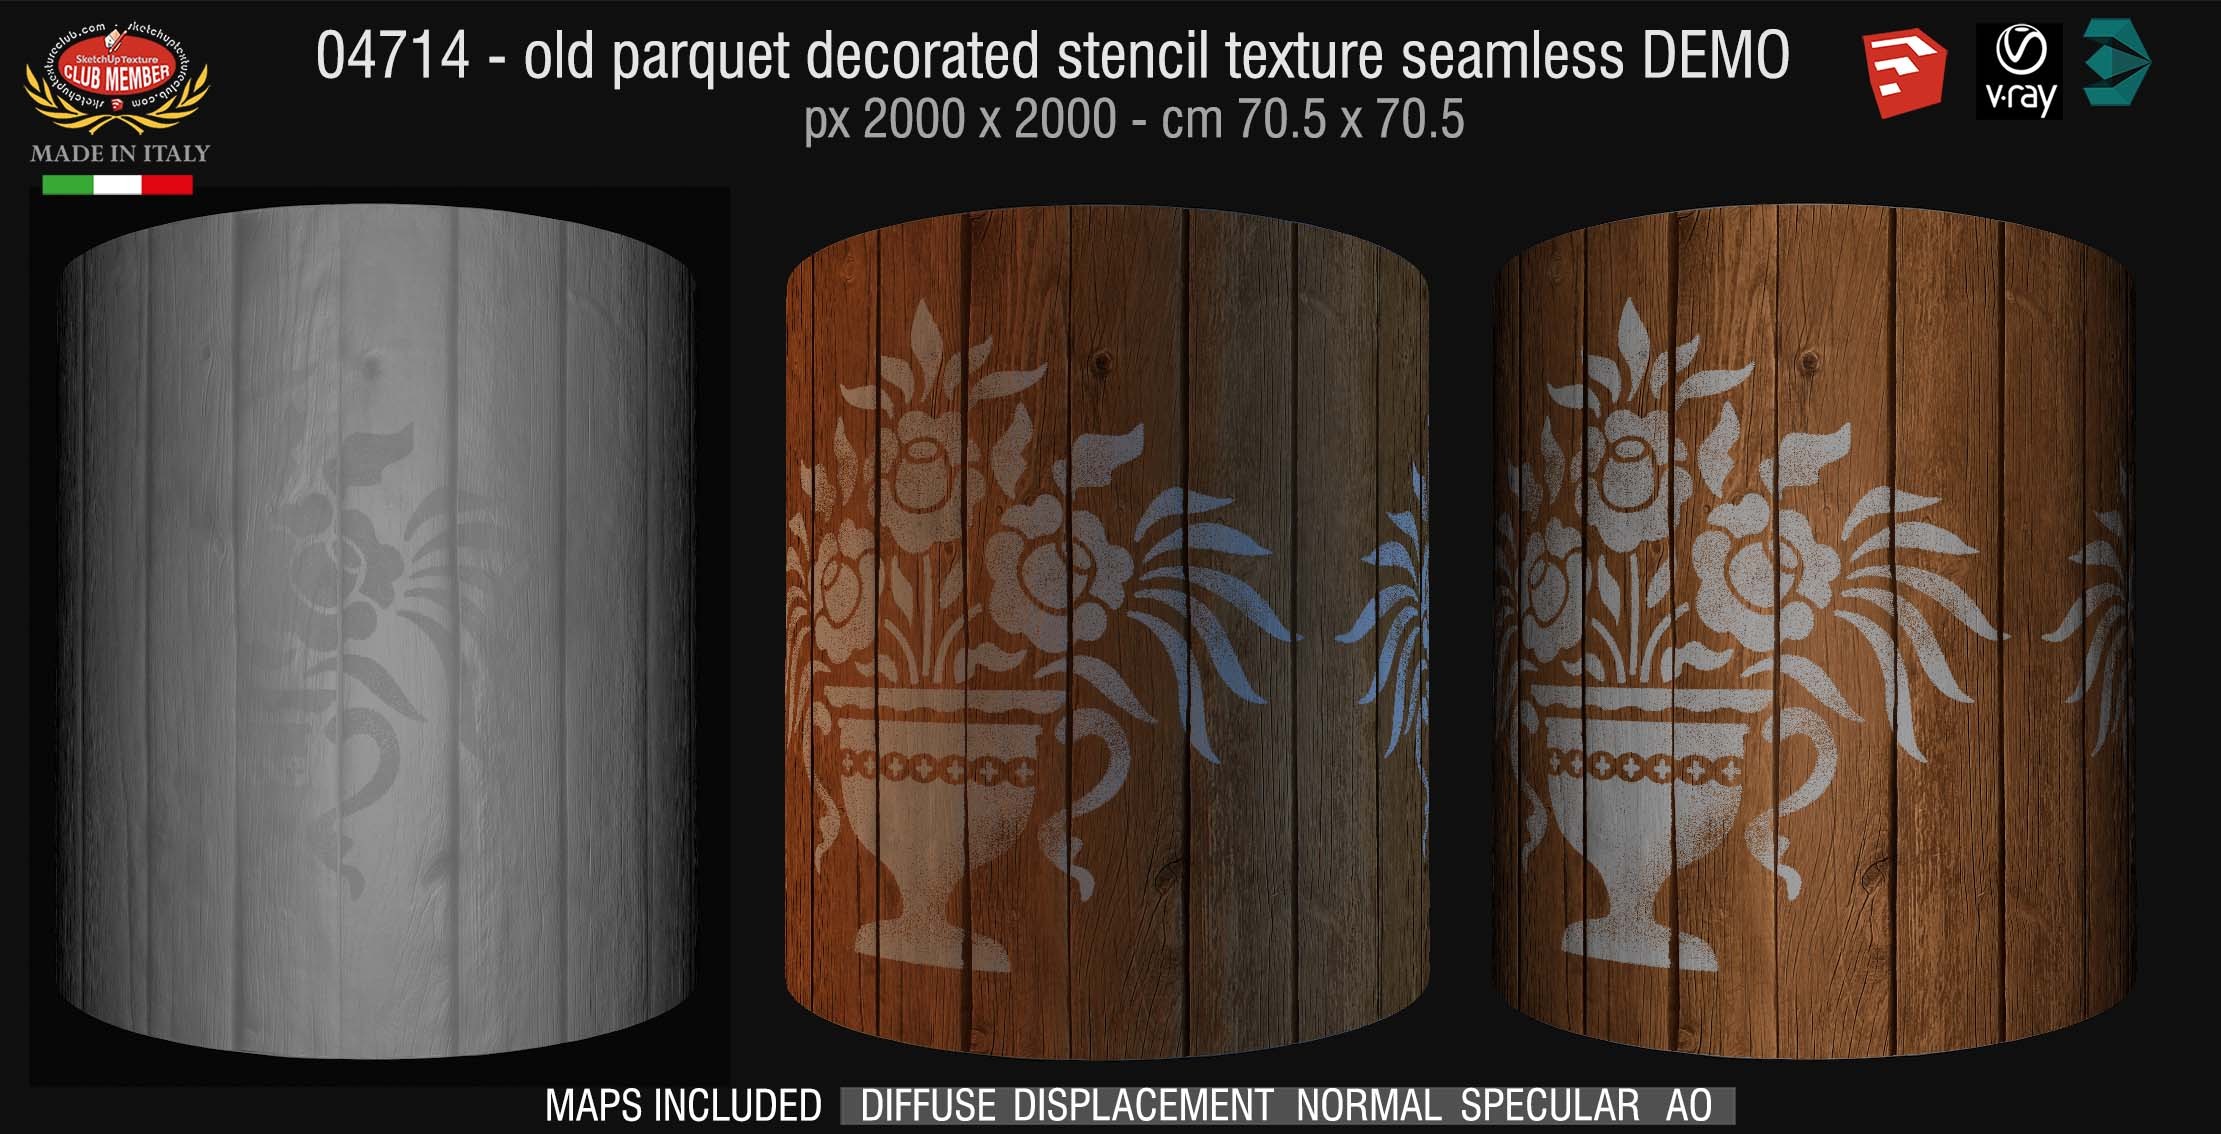 04714 HR Parquet decorated stencil texture seamless + maps DEMO